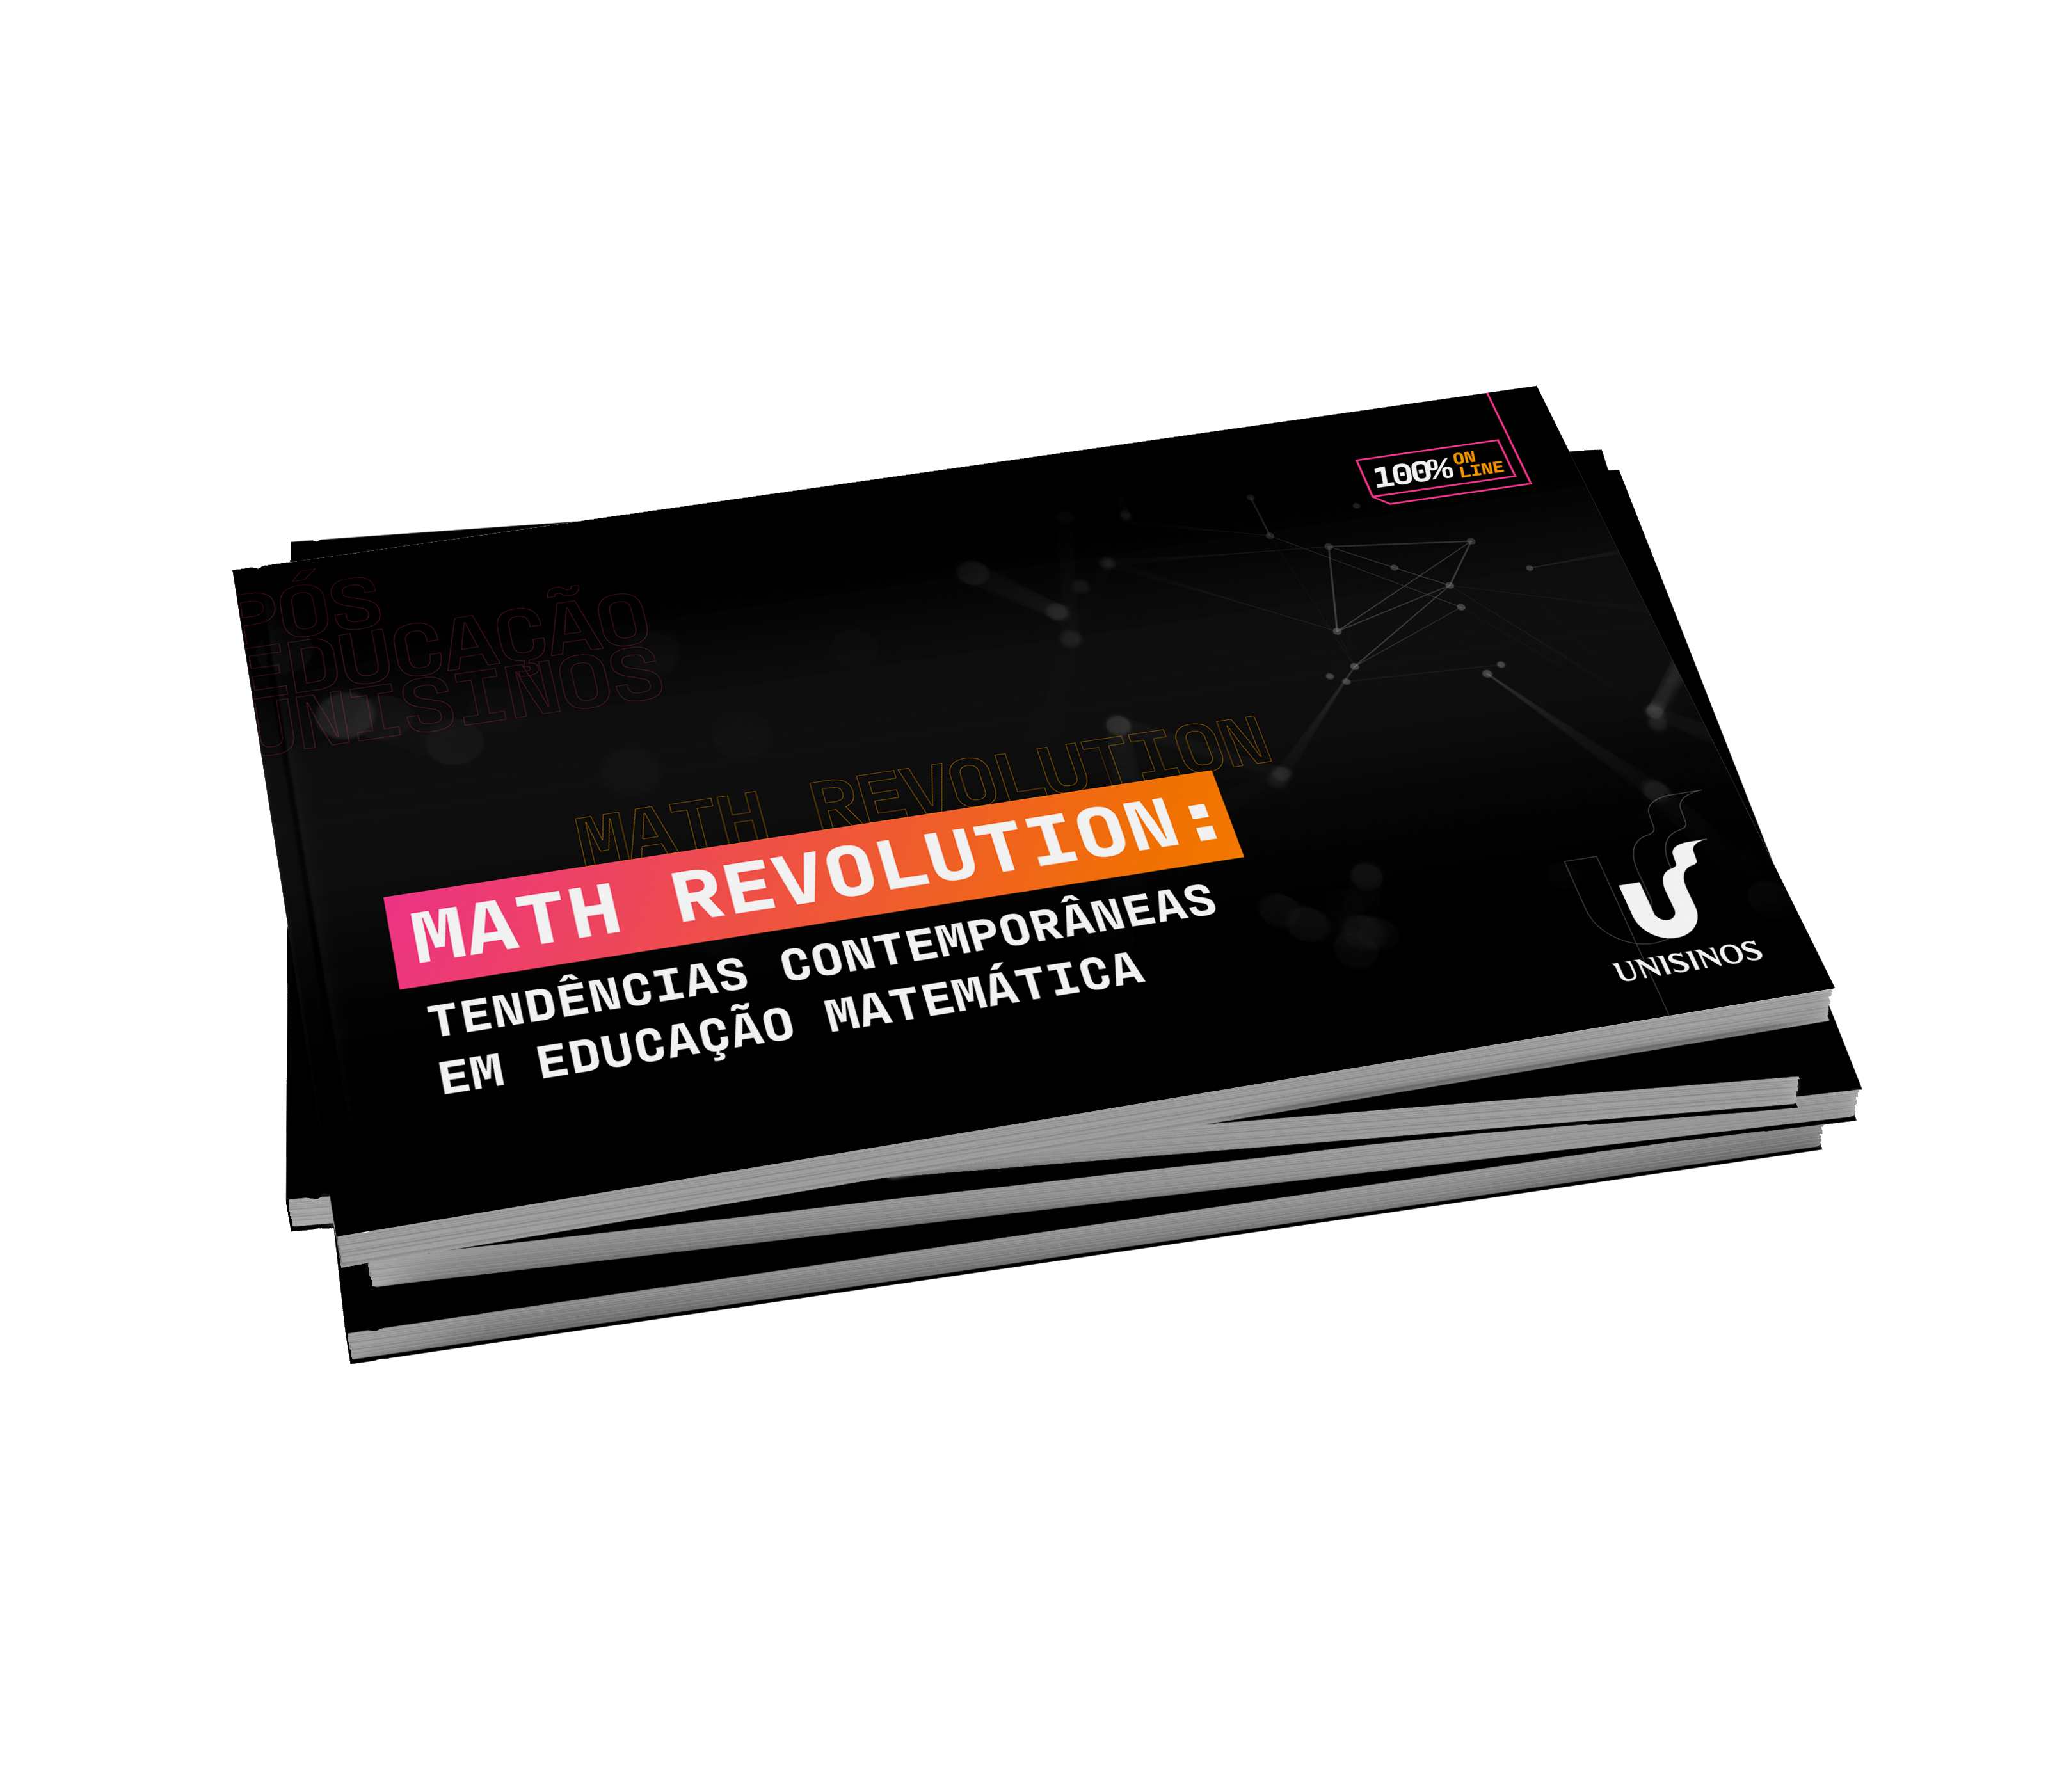 Capa do guia do curso Math Revolution: tendências contemporâneas em Educação Matemática da pós-graduação em educação